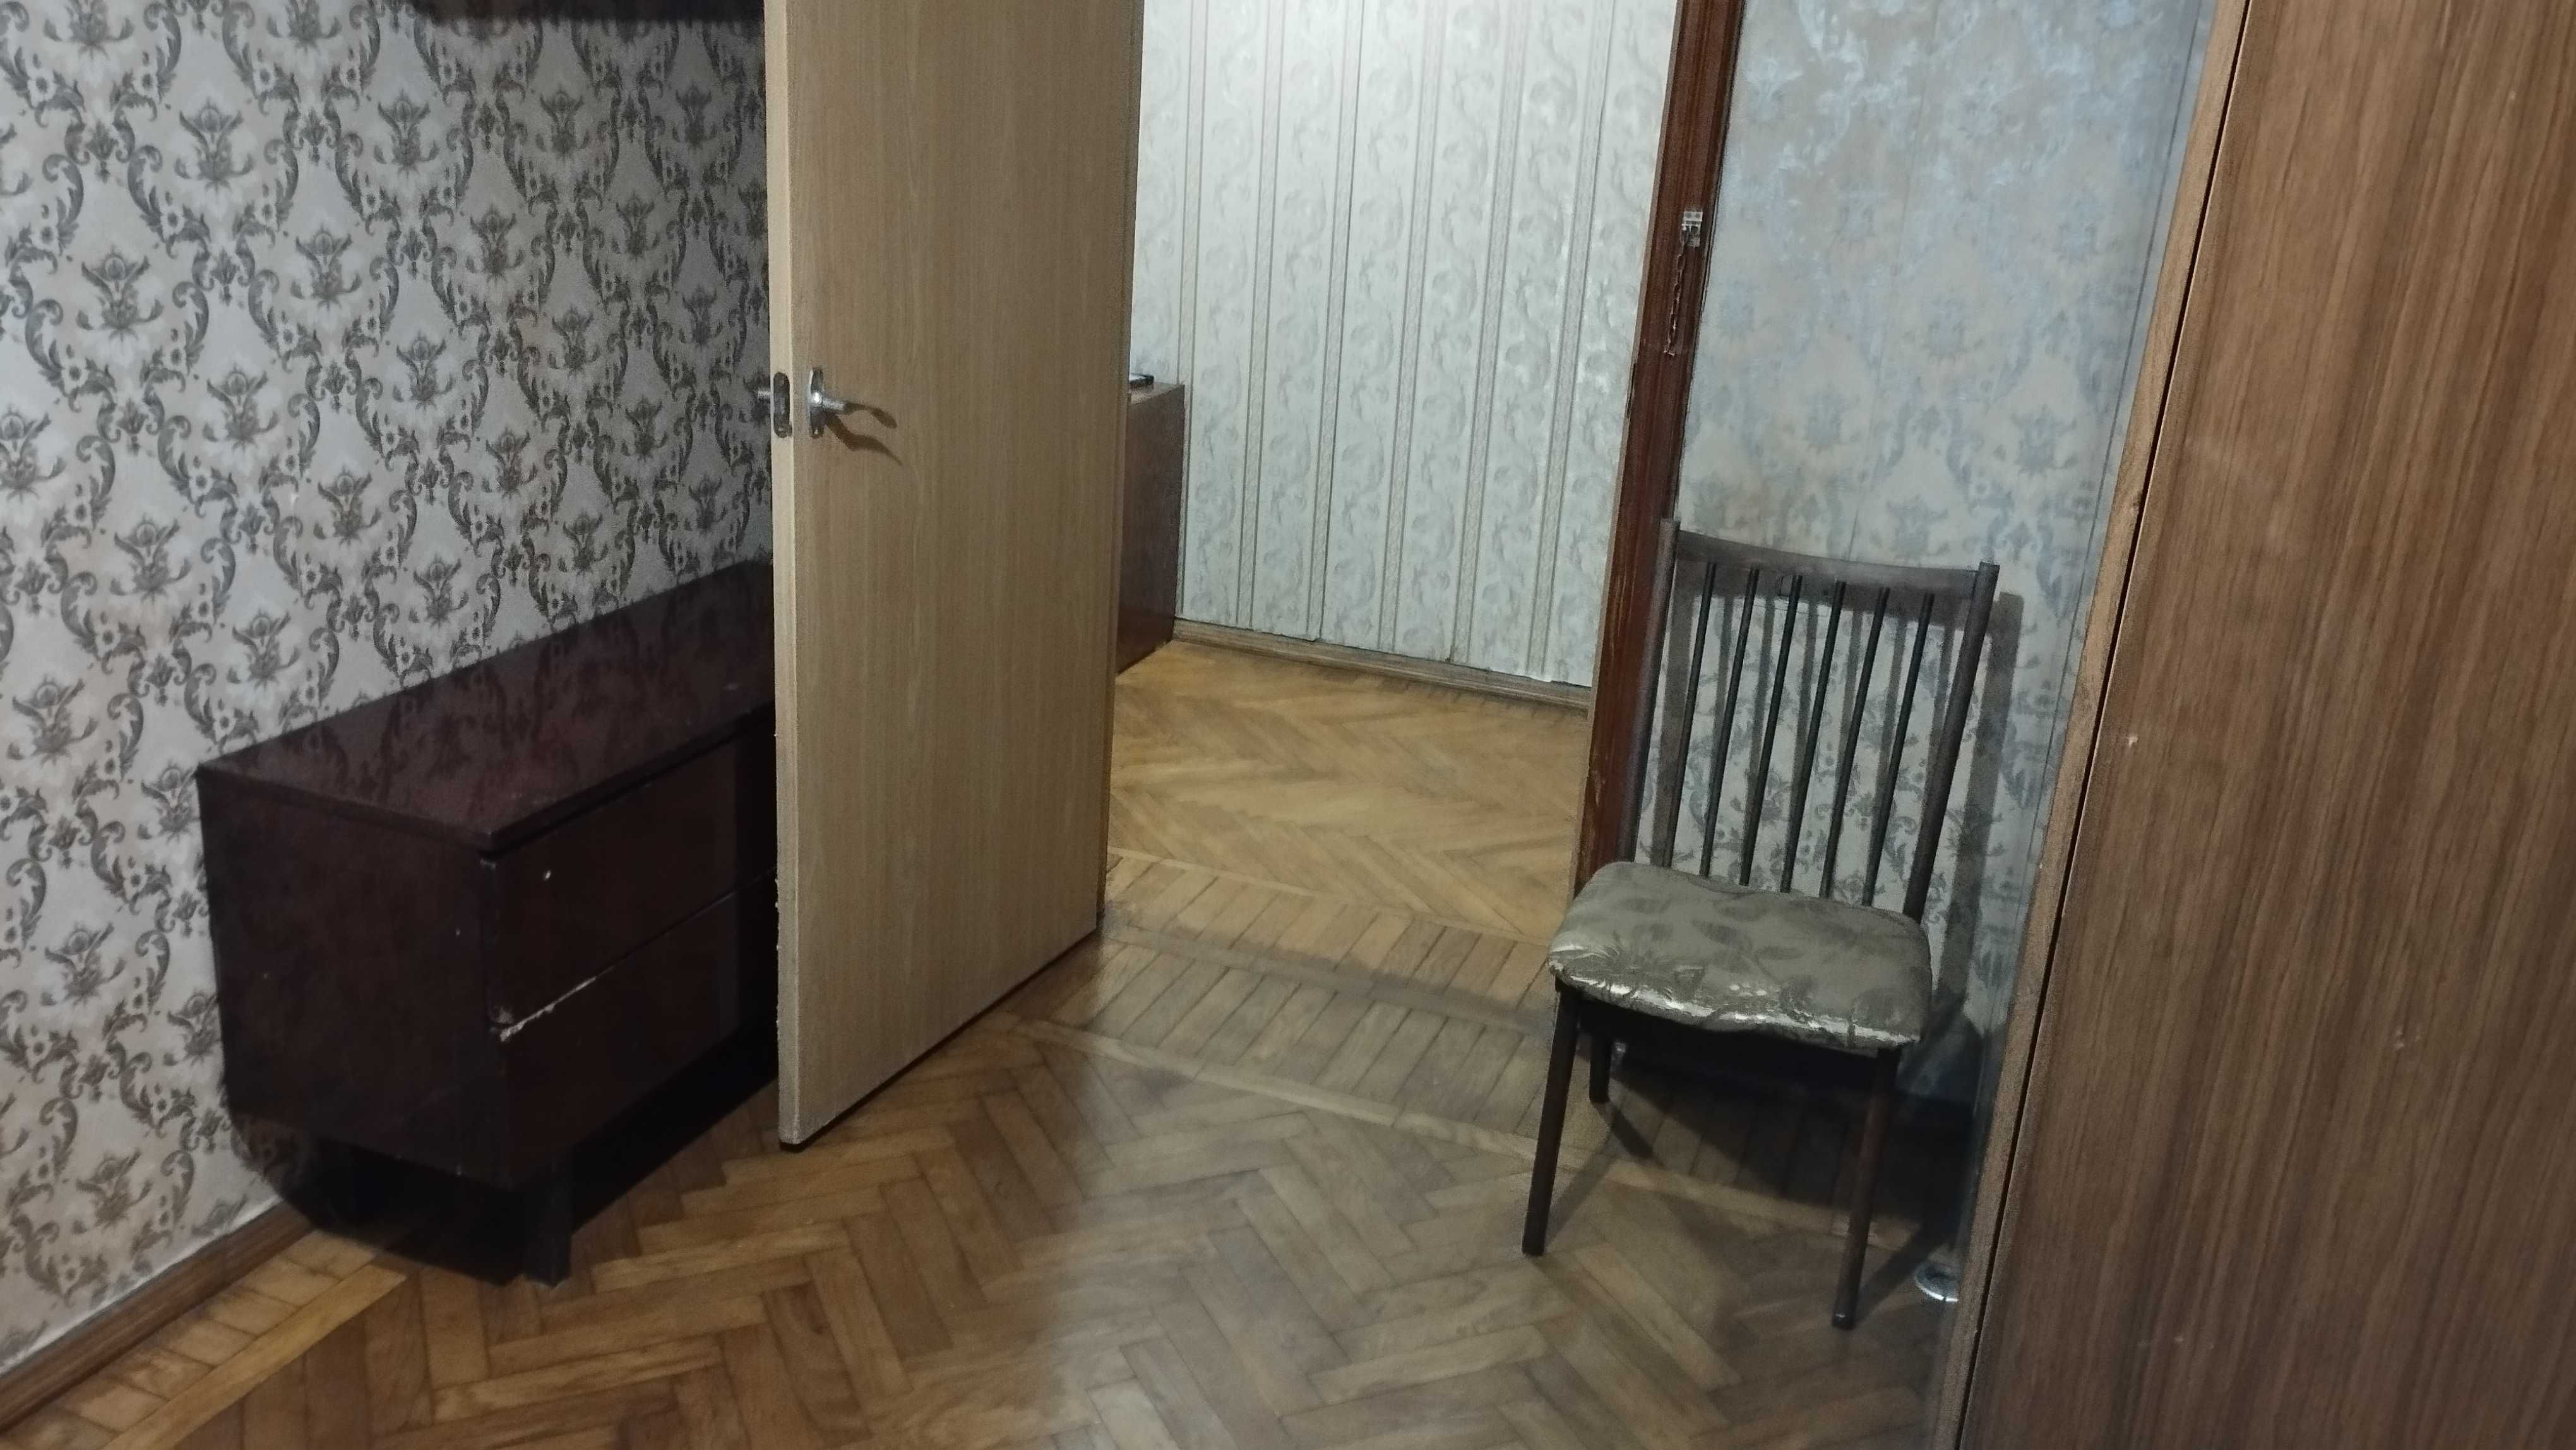 Квартира 3 комн на Глушко 14 (Киевский рынок). От хозяина.